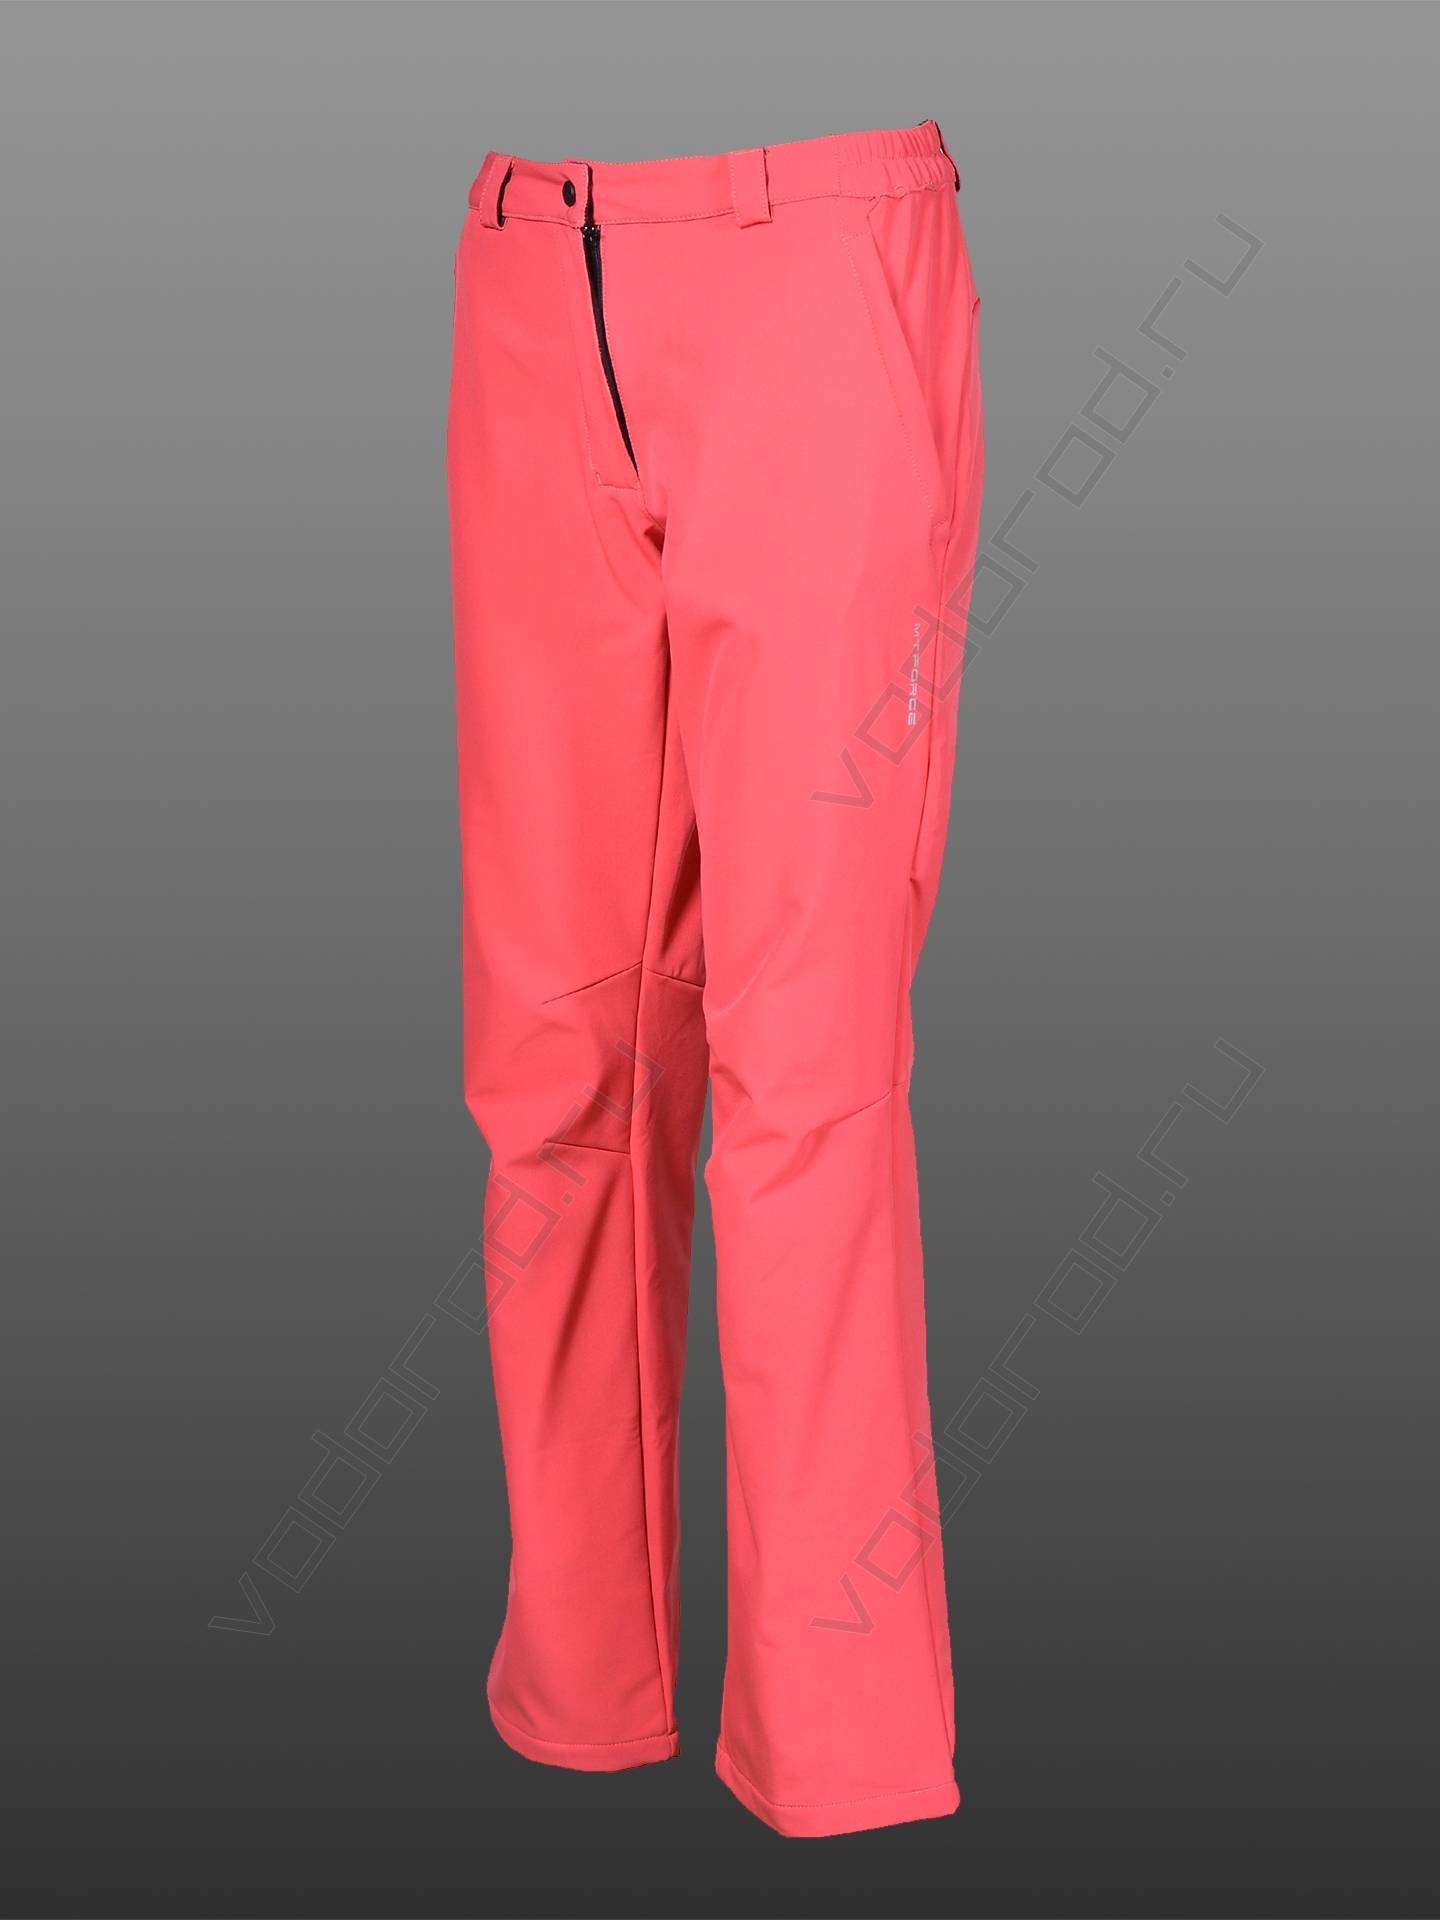 Трекинговые брюки женские цвет розовый